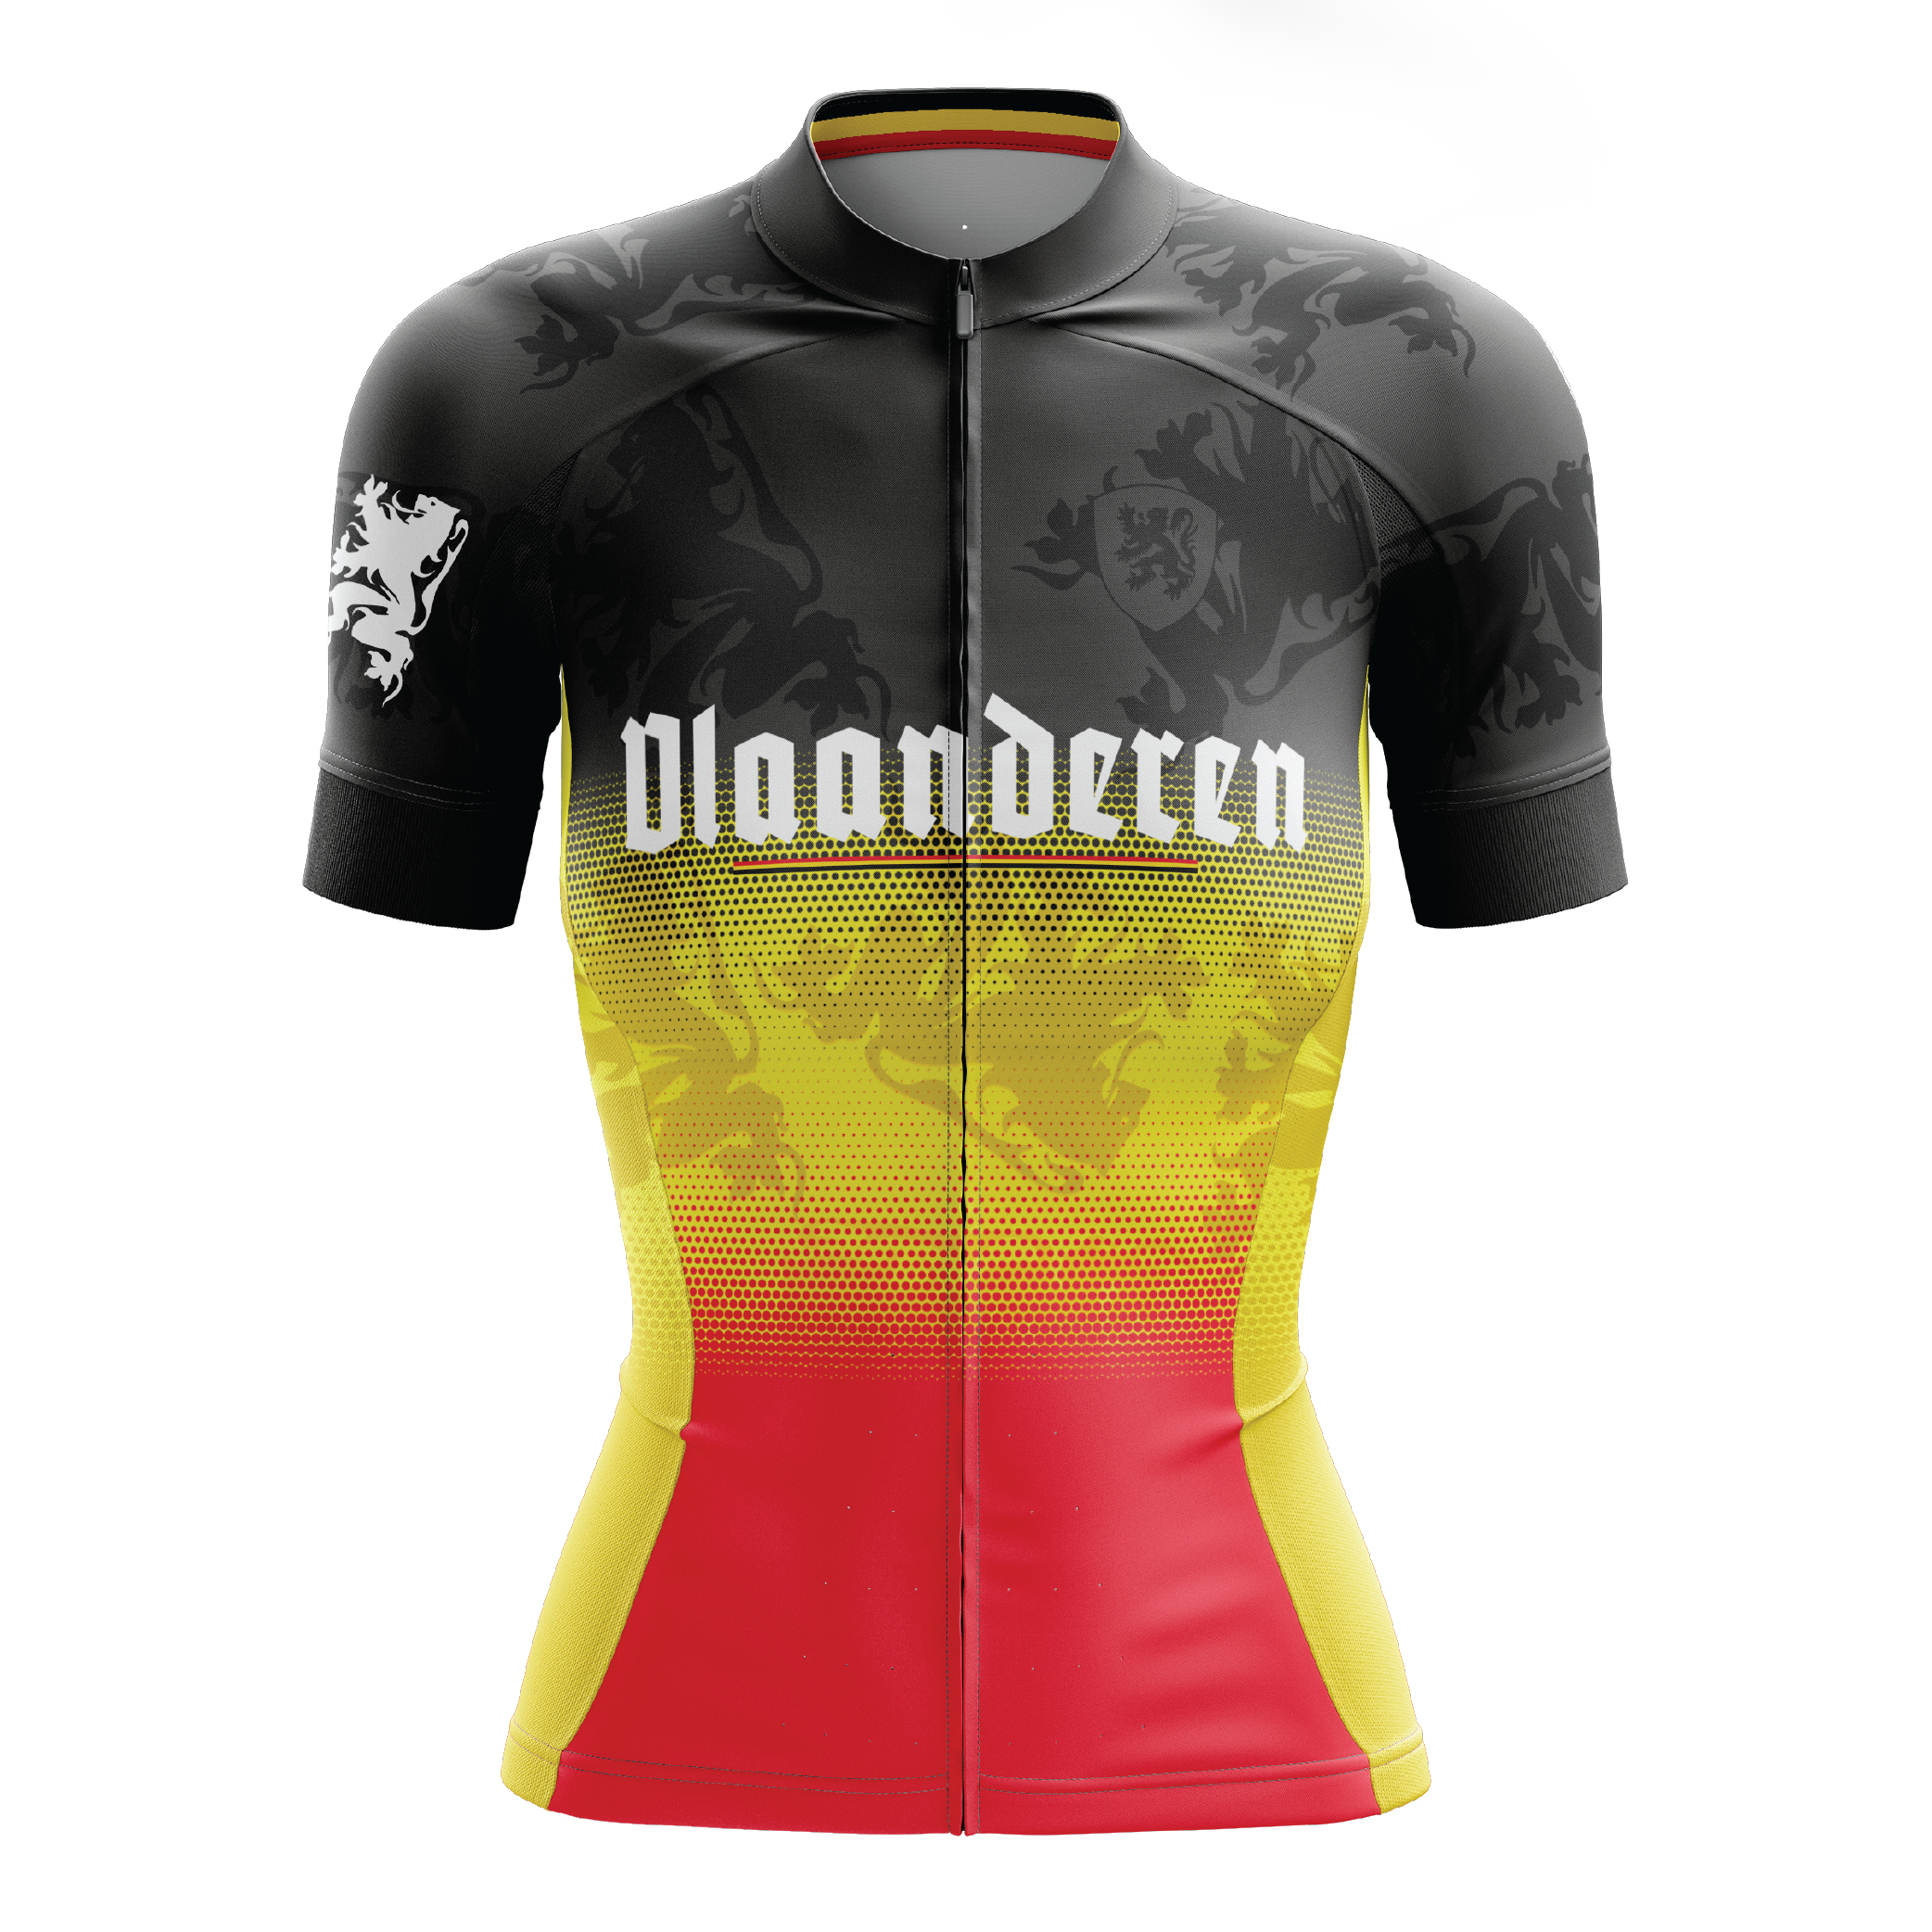 Vlaanderen Flanders S4 Short Sleeve Cycling Jersey